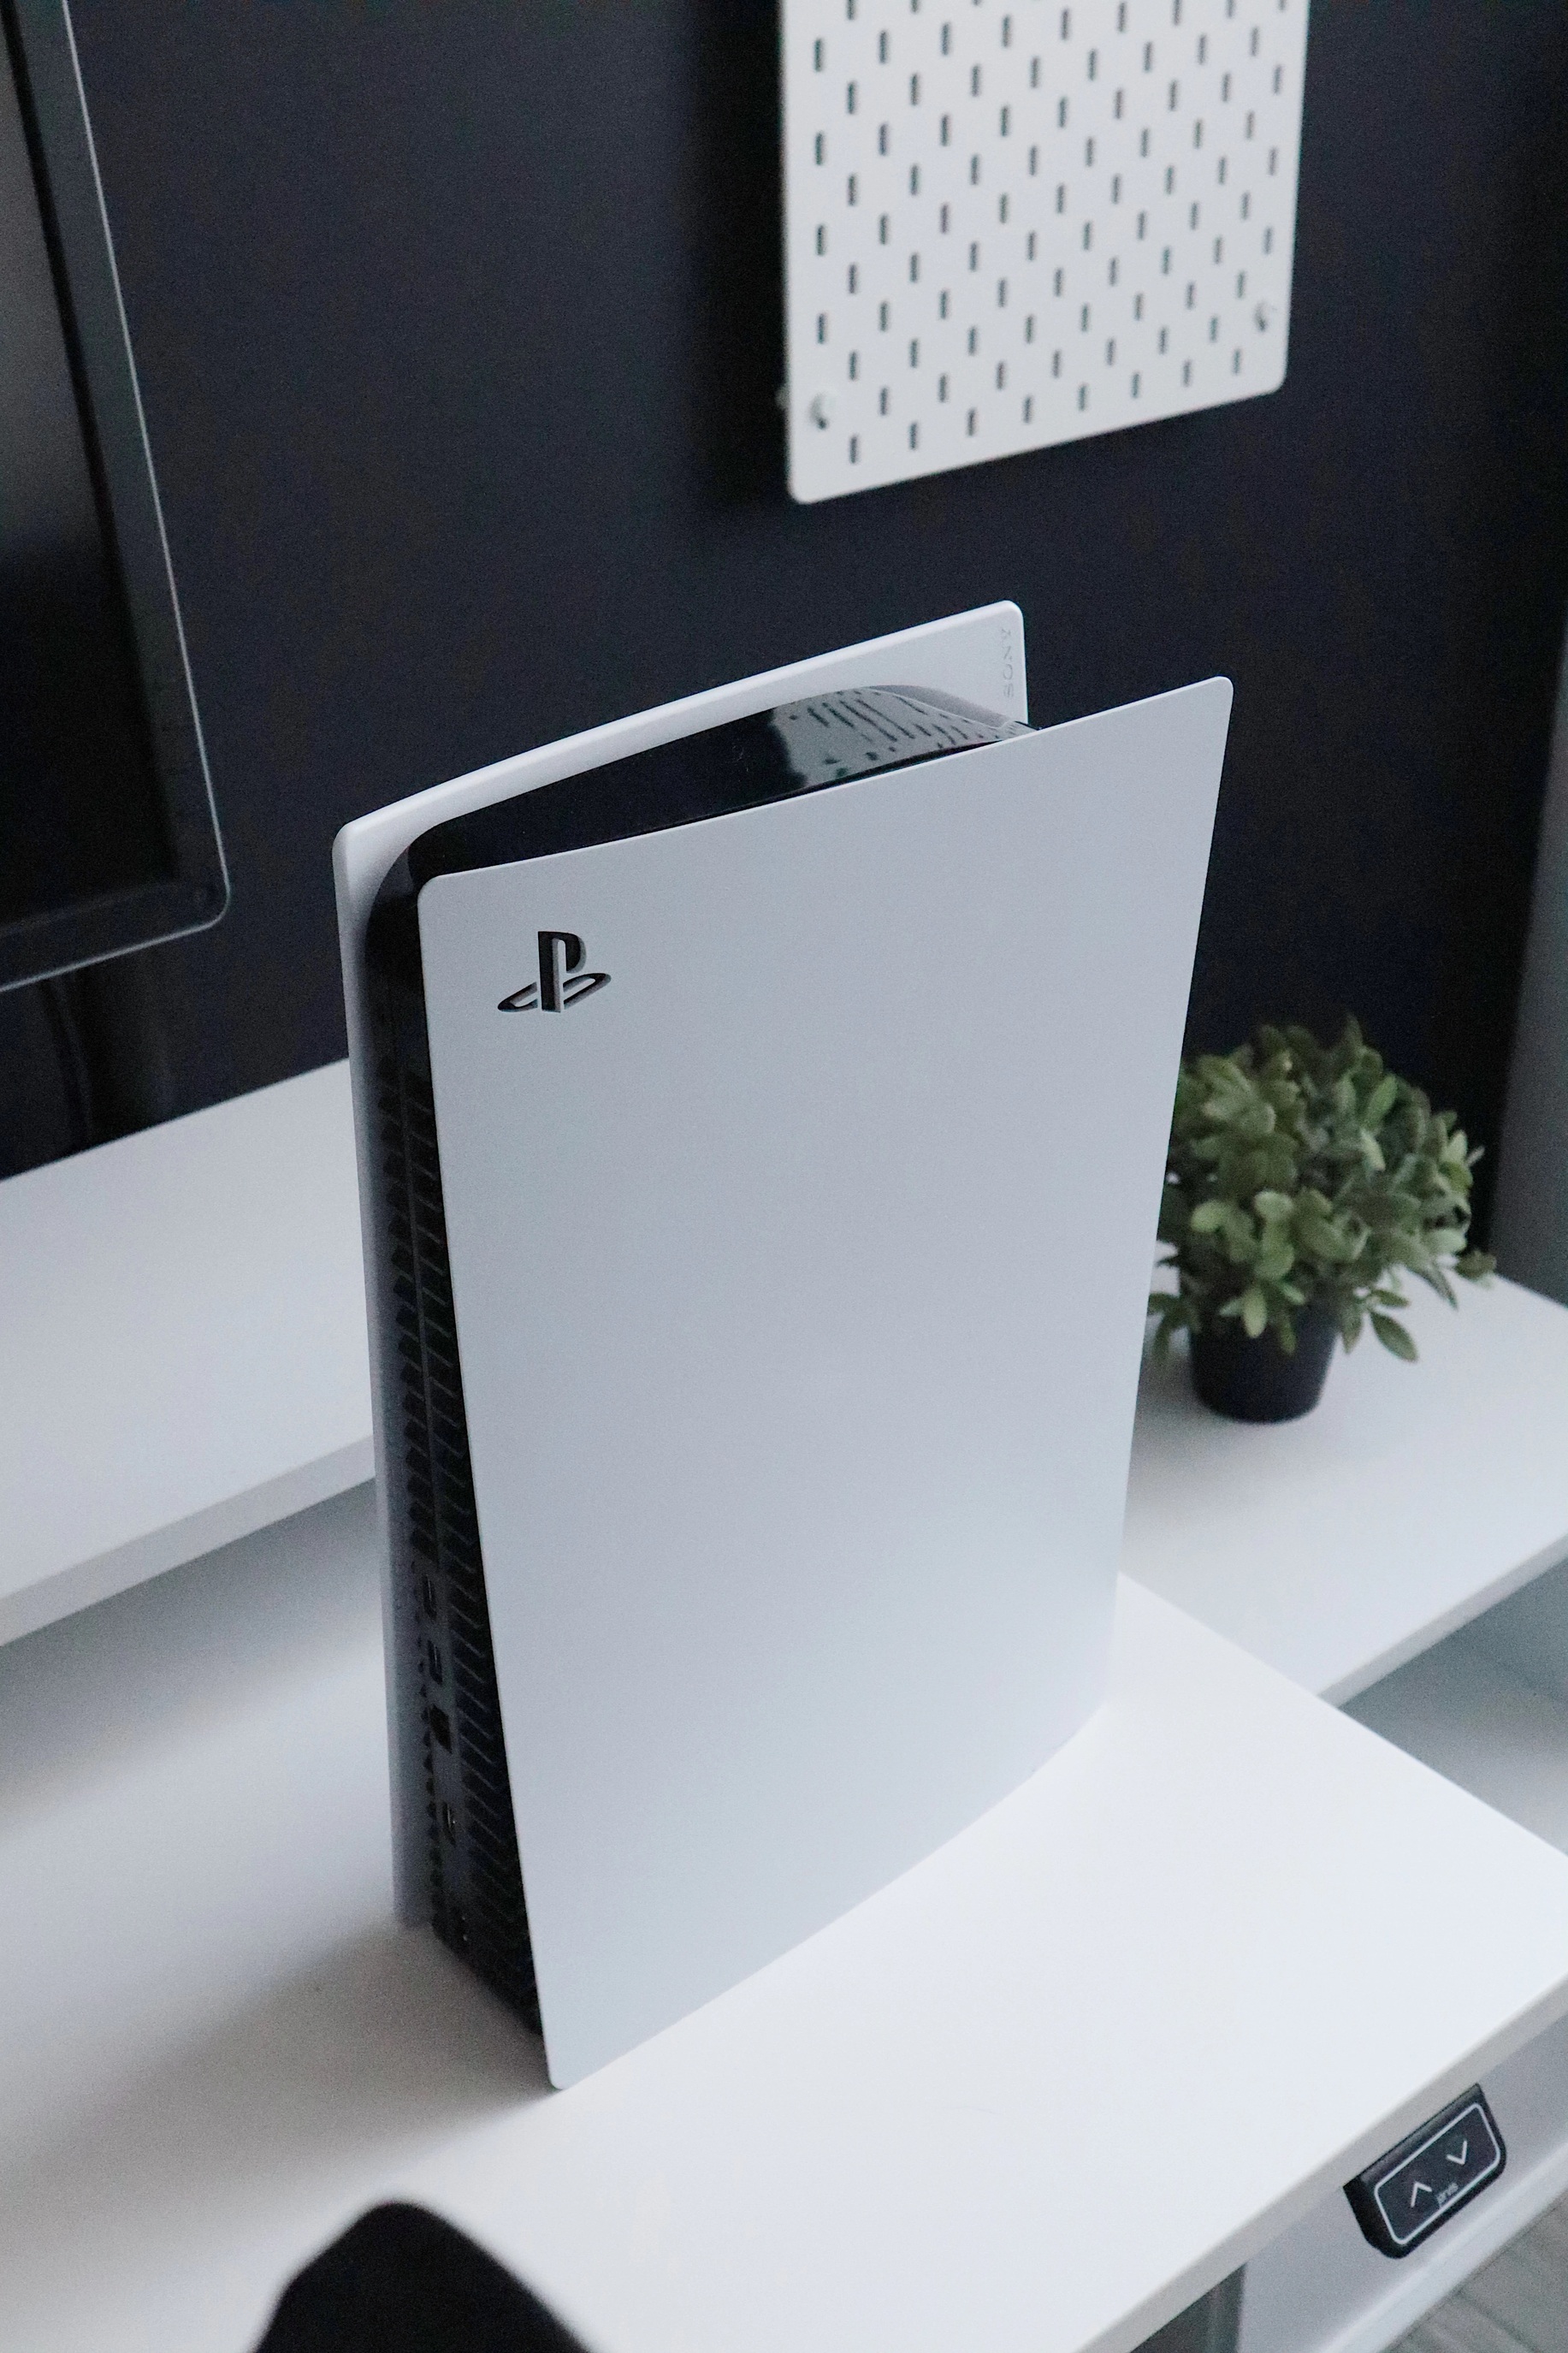 PlayStation начала лидировать в продажах по сравнению с Xbox Series X и S